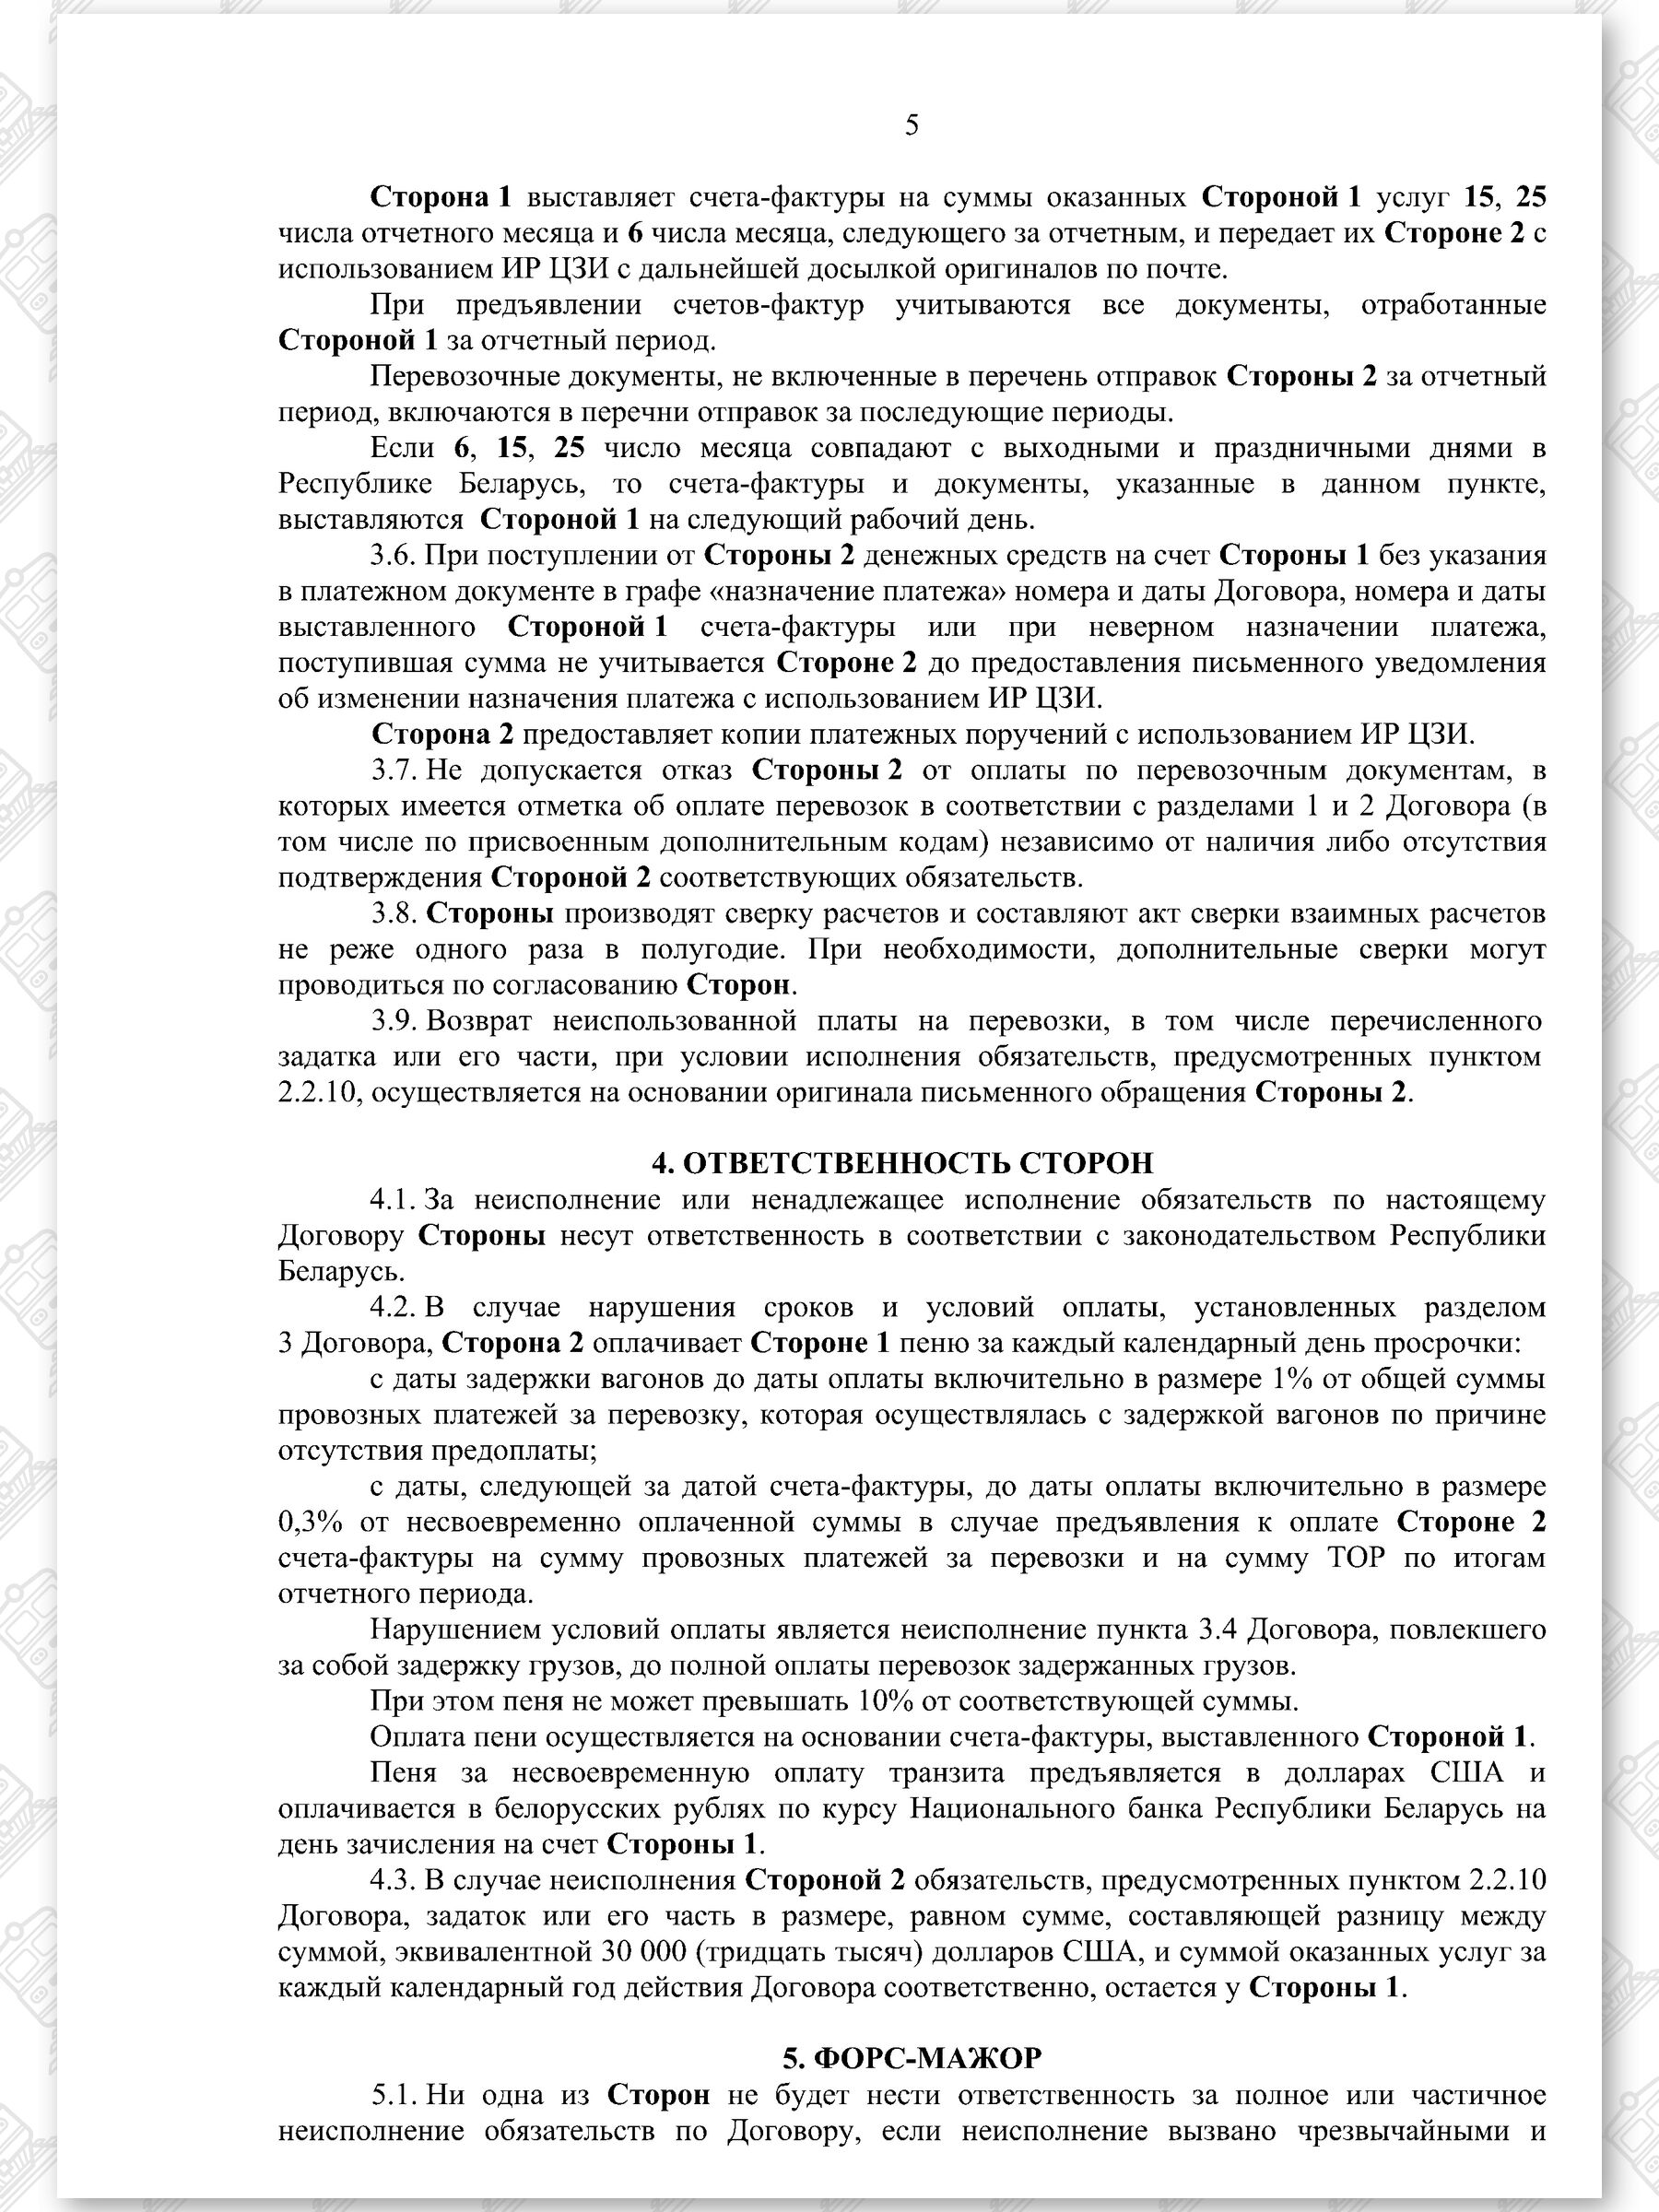 Договор на 2022 - 2024 гг. БЖД с ООО «ТранскоЭнерджи» (Страница 5)